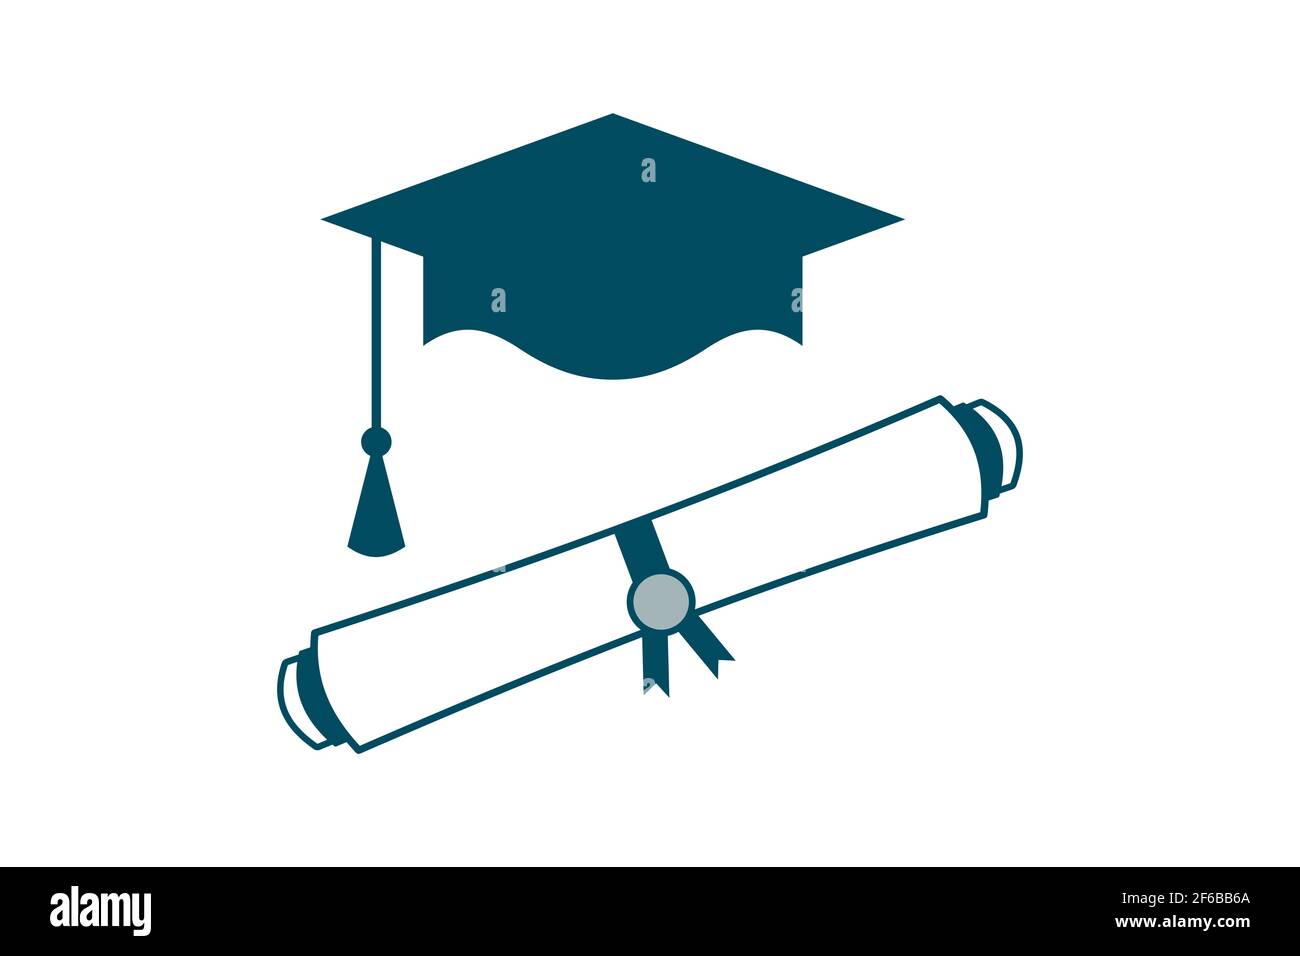 Abschlusskappe und Bildlaufsymbol für Diplom. Blaue Mortarboard und College-Zertifikat. Hochschulkonzept an der Universität. PROMOTION oder Promotion. Stock Vektor